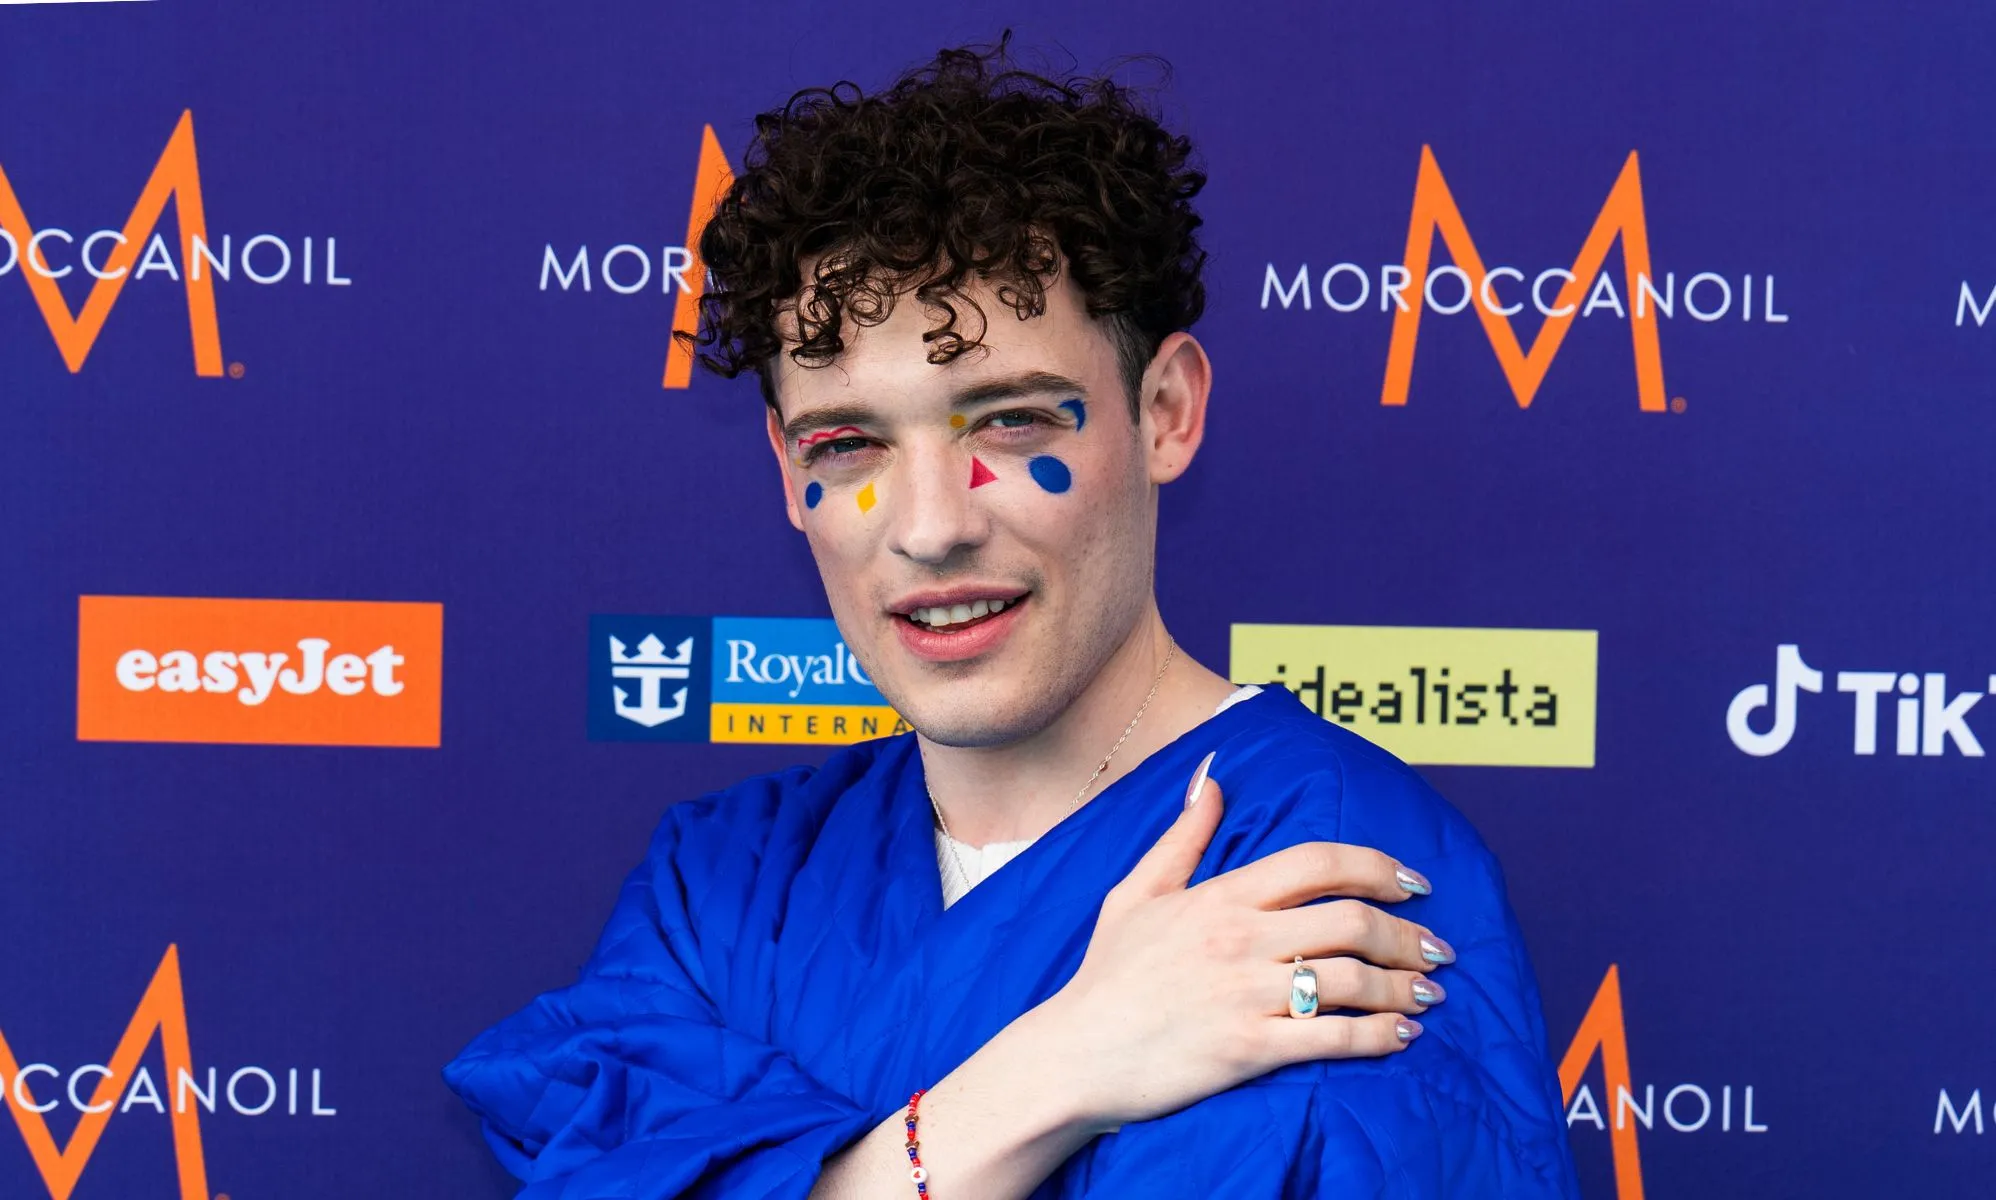 Nemo, el favorito no binario de Eurovisión, dice que representar a la comunidad en el concurso es "increíble